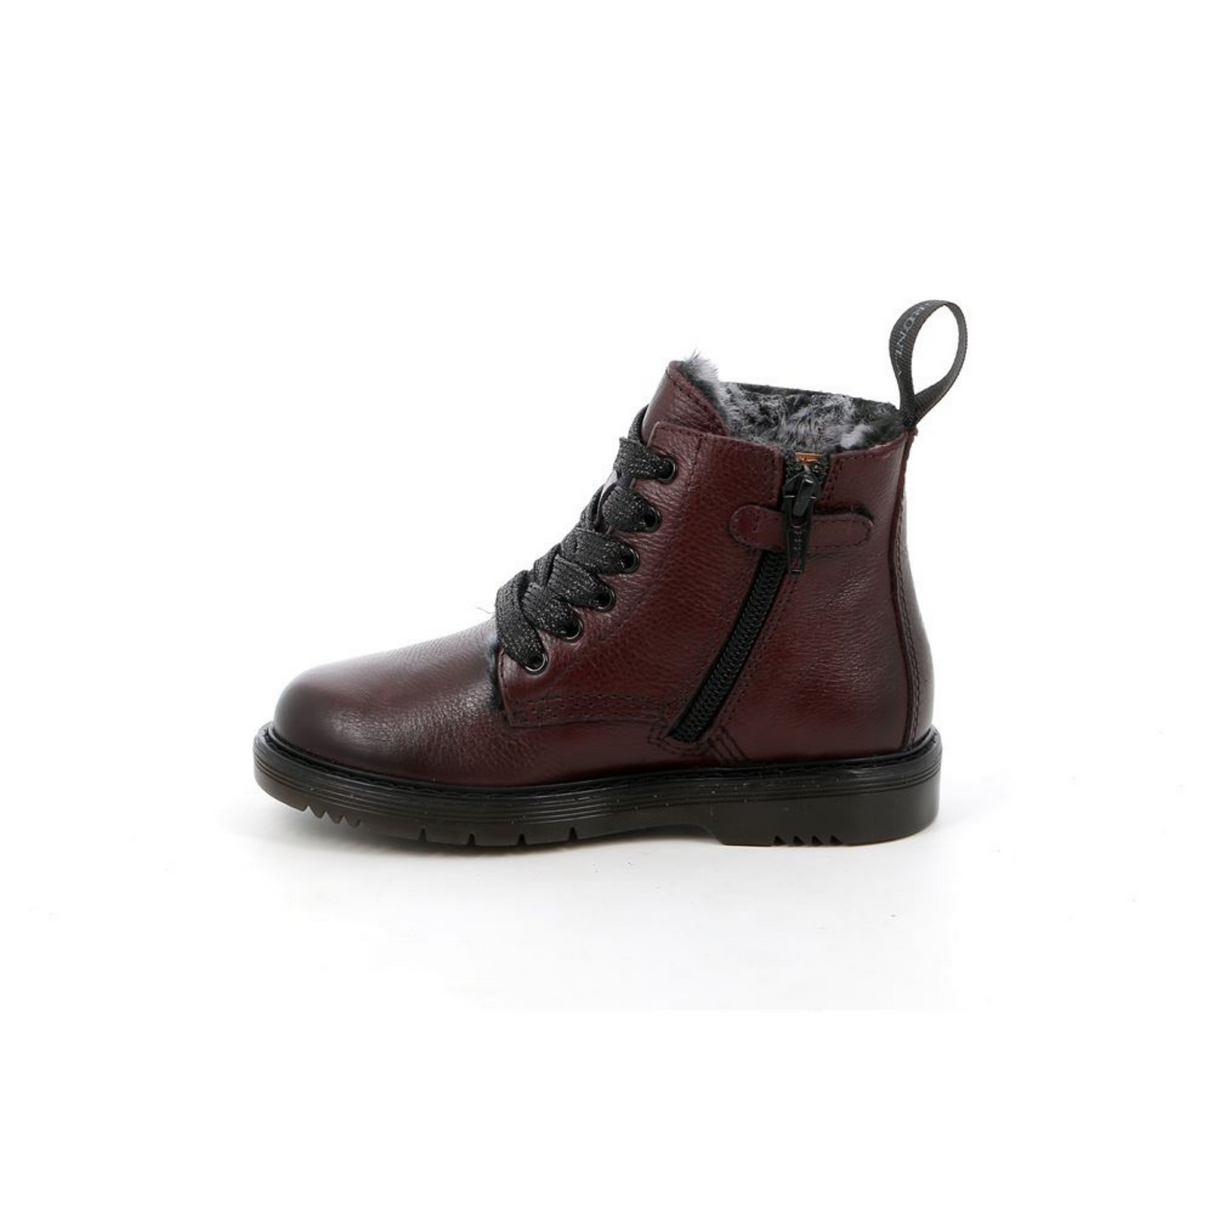 Taba Bordeaux | Children's boots | 30. Size